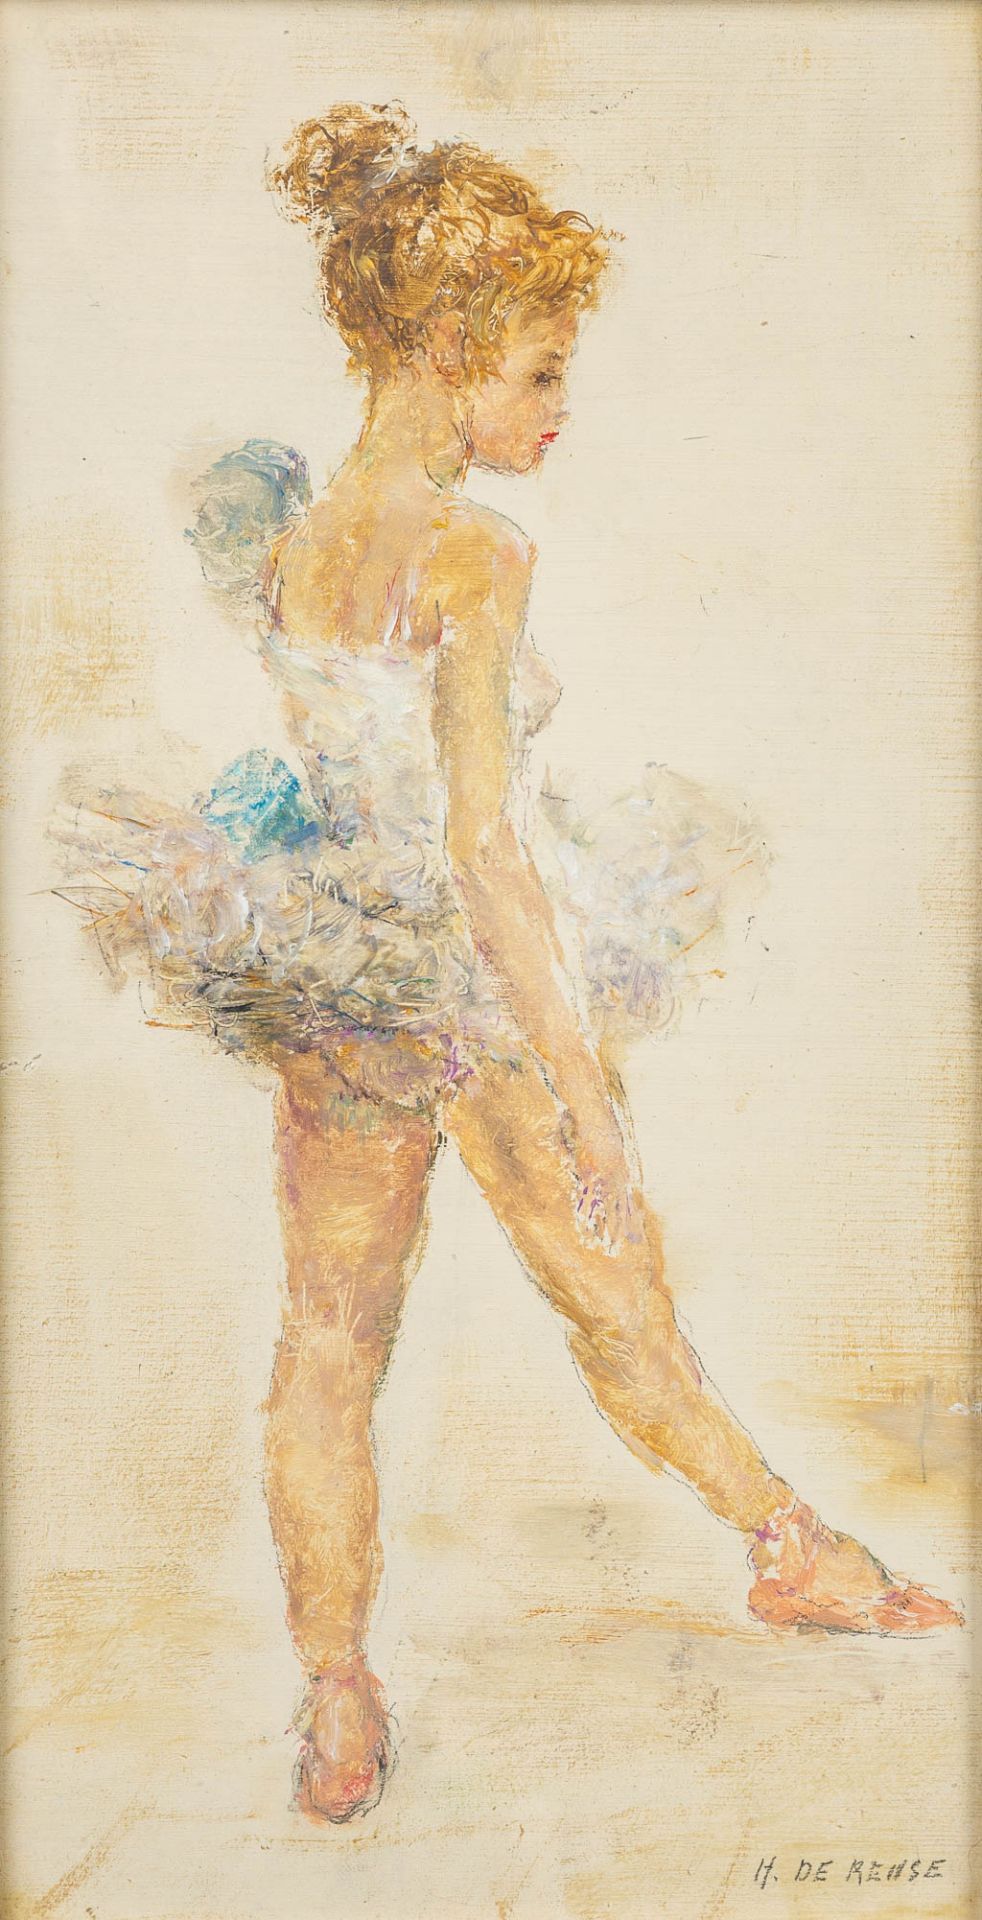 Hélène DE REUSE (1892-1979) 'Ballerina' a painting, oil on canvas. (18 x 34 cm)